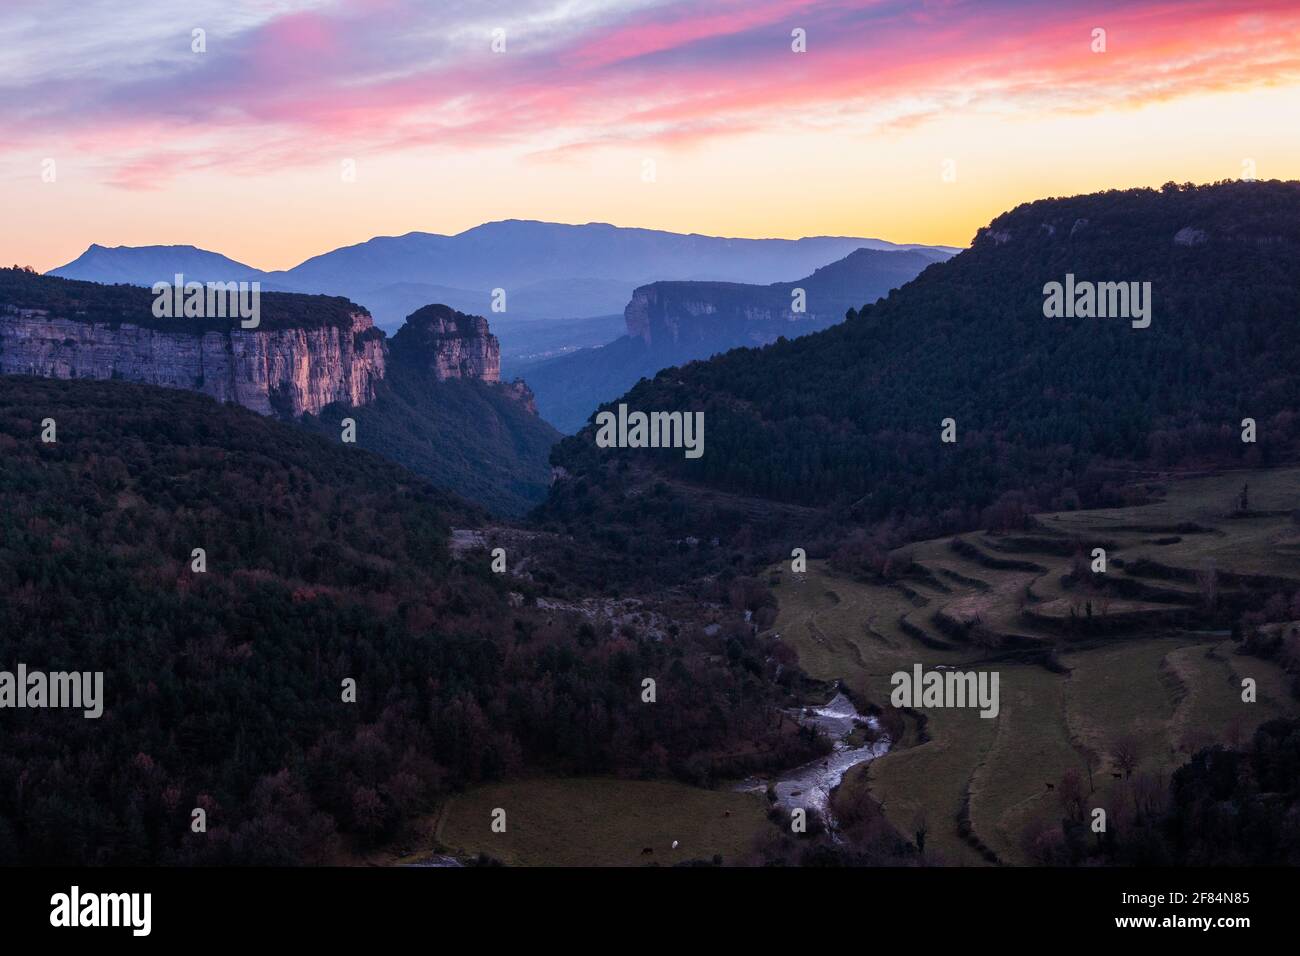 Paisaje de un valle con altas montañas rocosas con un hermoso cielo con nubes rosadas y naranjas al atardecer. Tejas de Tavertet, Collsacabra, Oson Foto de stock